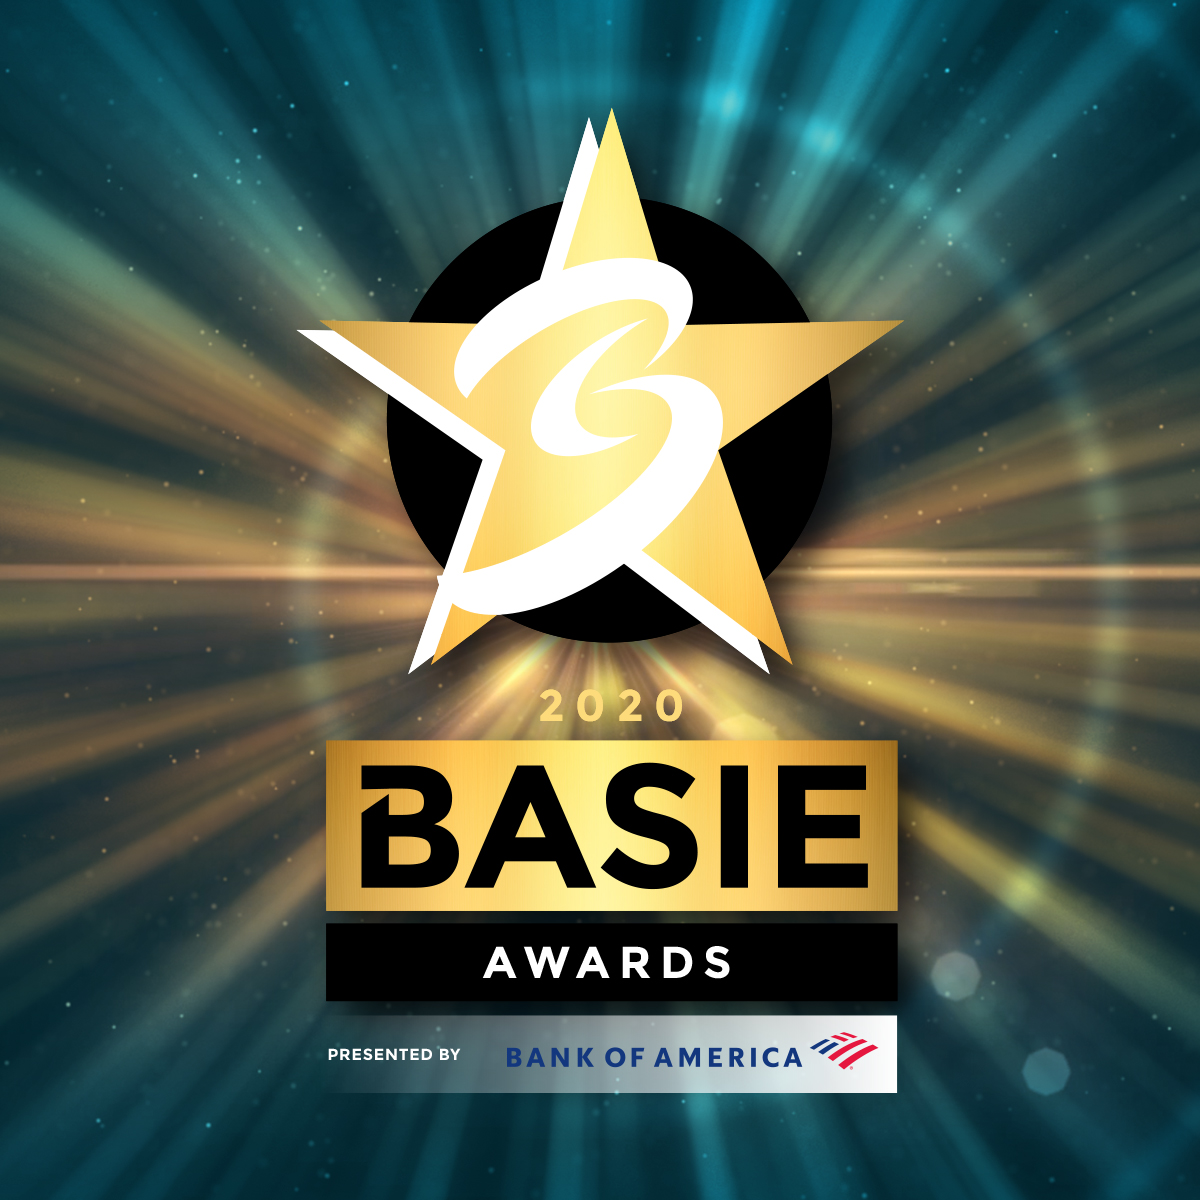 Basie Awards logo